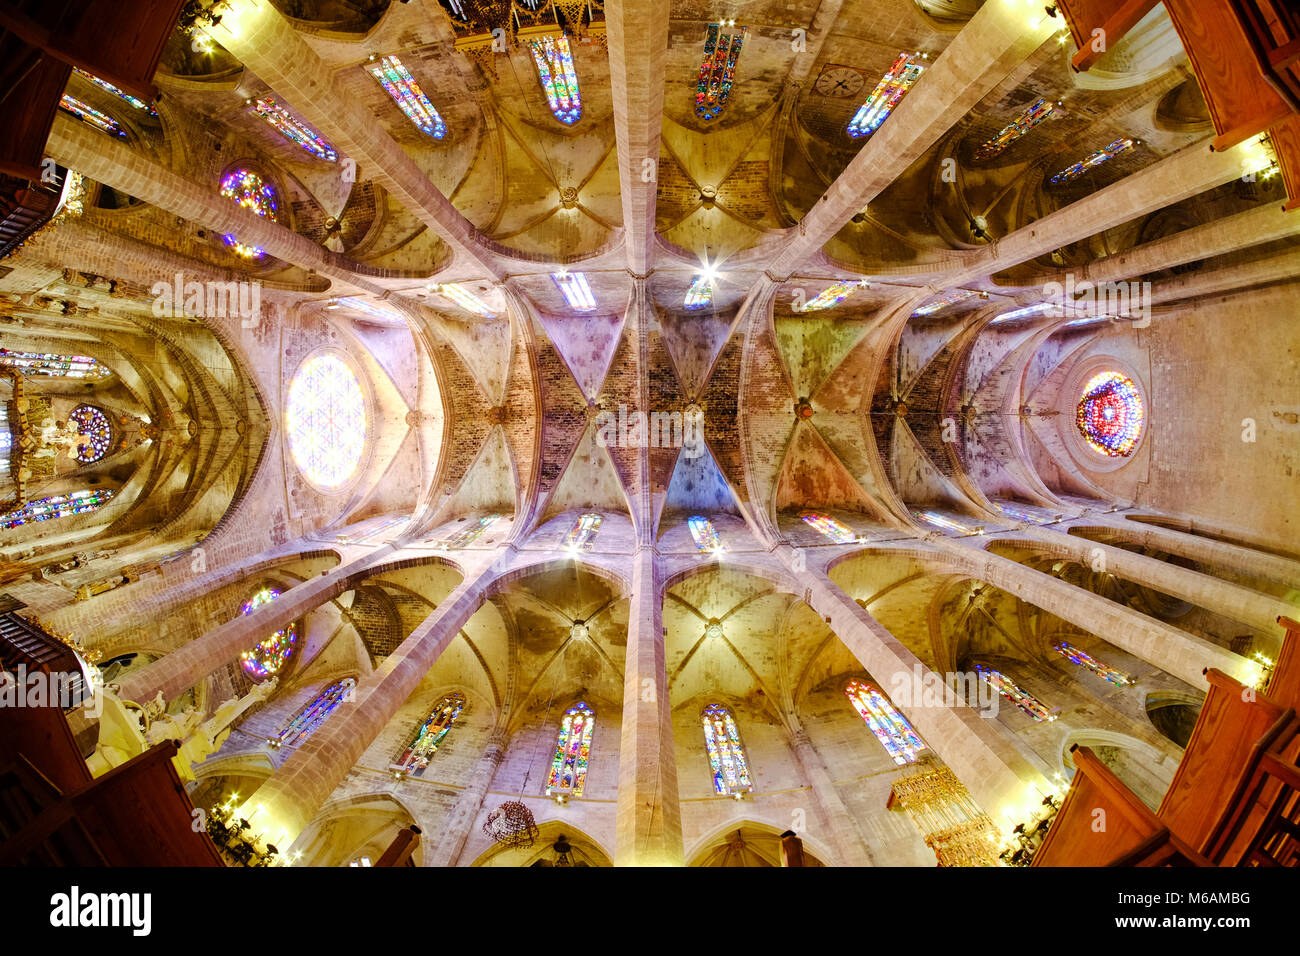 La Seu, die berühmten Katholischen mittelalterlichen Kathedrale in Palma de Mallorca, Innenansicht mit Fish-eye objektiv Wirkung. Stockfoto